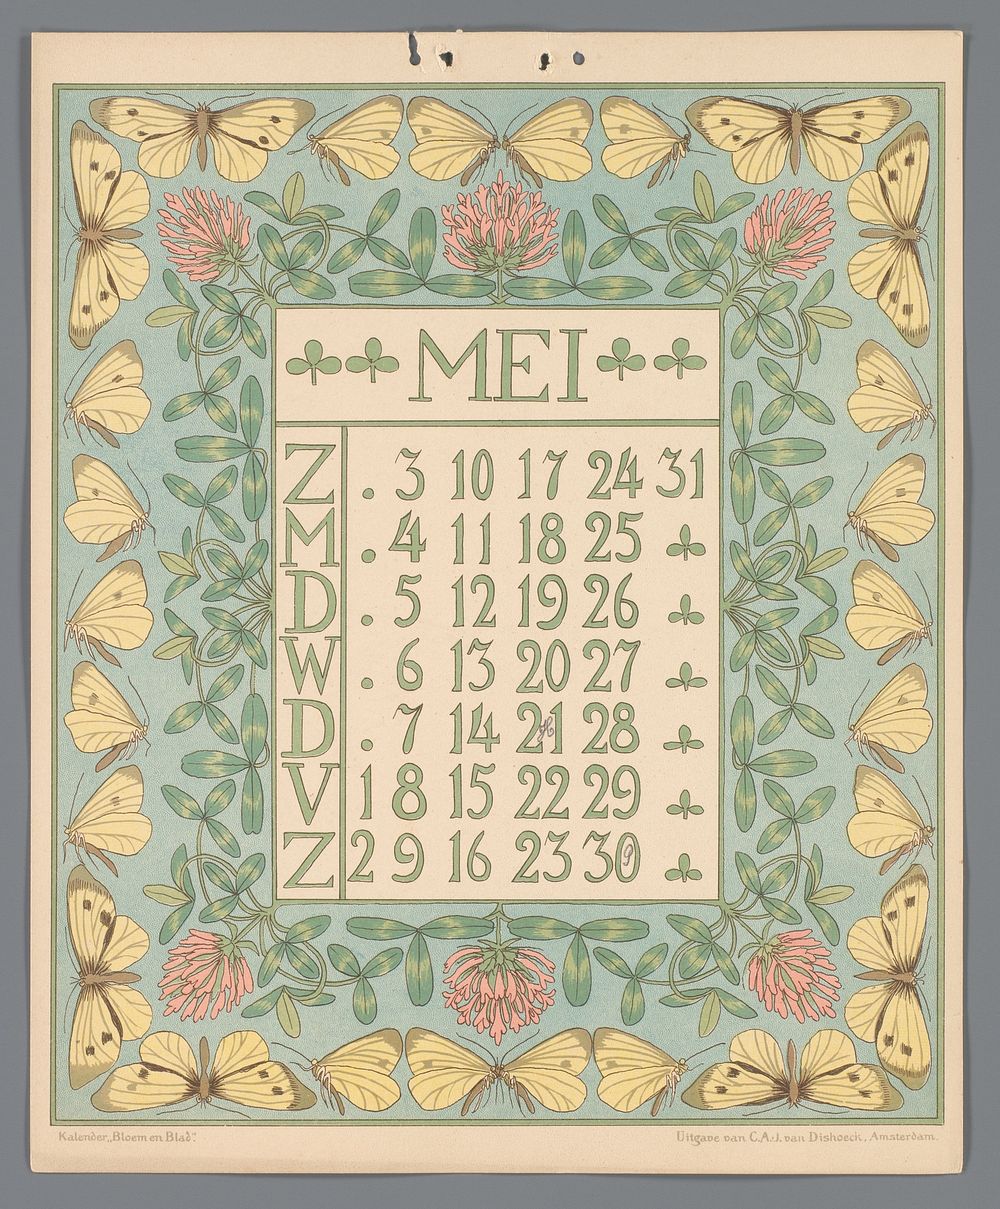 Kalenderblad voor mei van de kalender 'Bloem en blad' (c. 1900 - c. 1910) by Gebroeders Braakensiek, Netty van der Waarden…